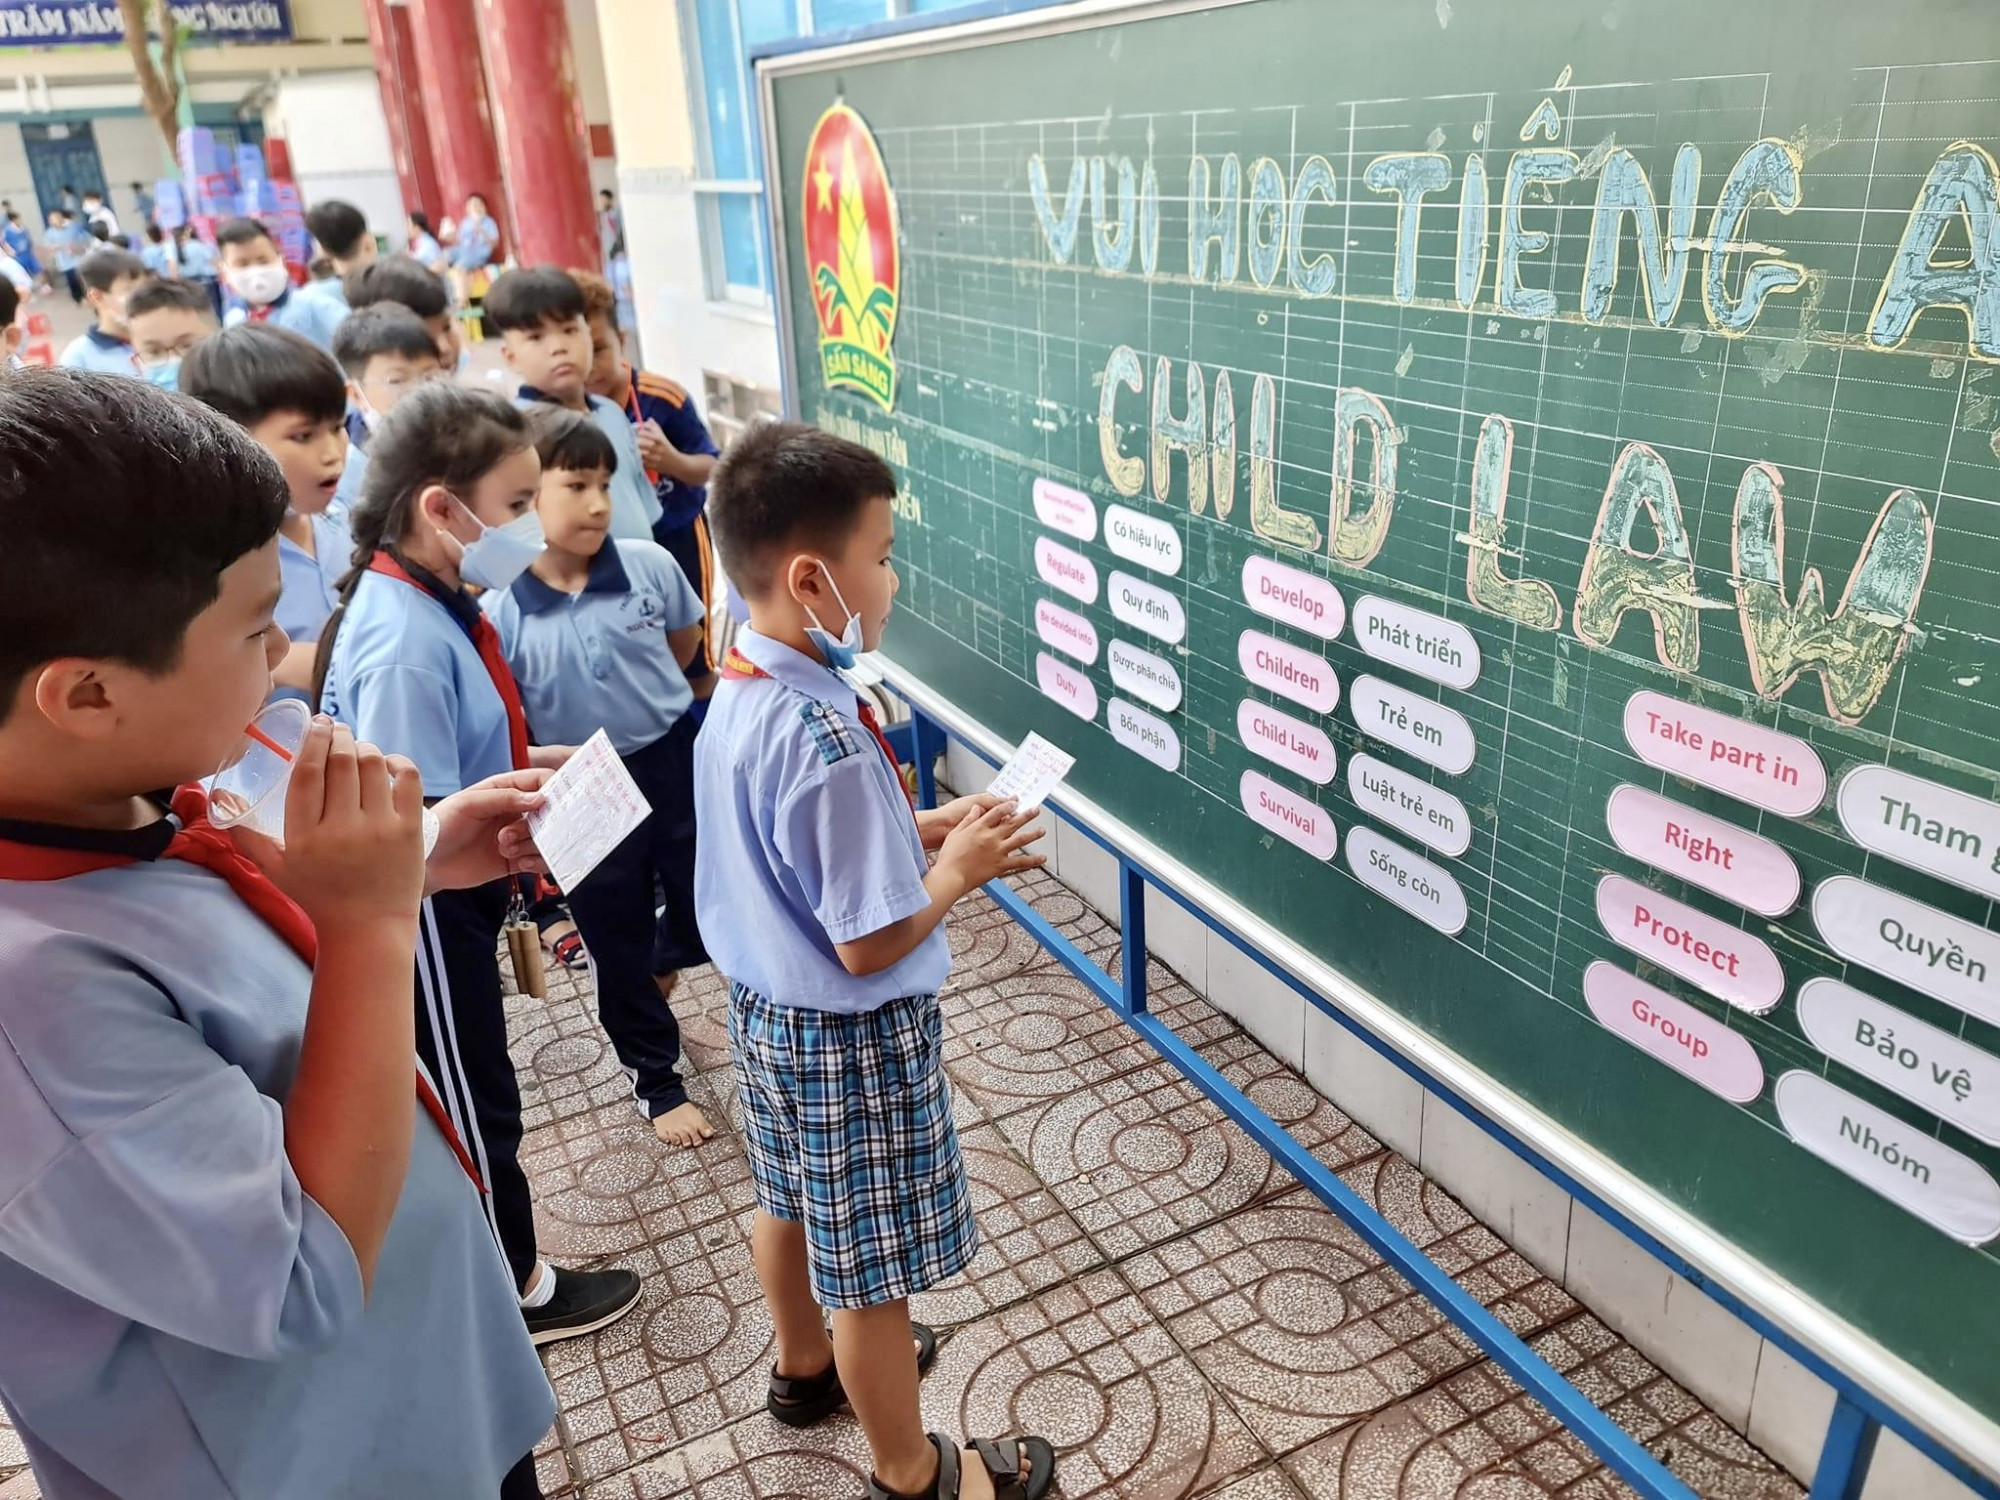 Trường TH Ngô Quyền (quận Bình Tân) với quy mô 5.170 học sinh, tương đương với 106 lớp học, gấp 4 lần quy mô 1 trường tiểu bọc bình thường